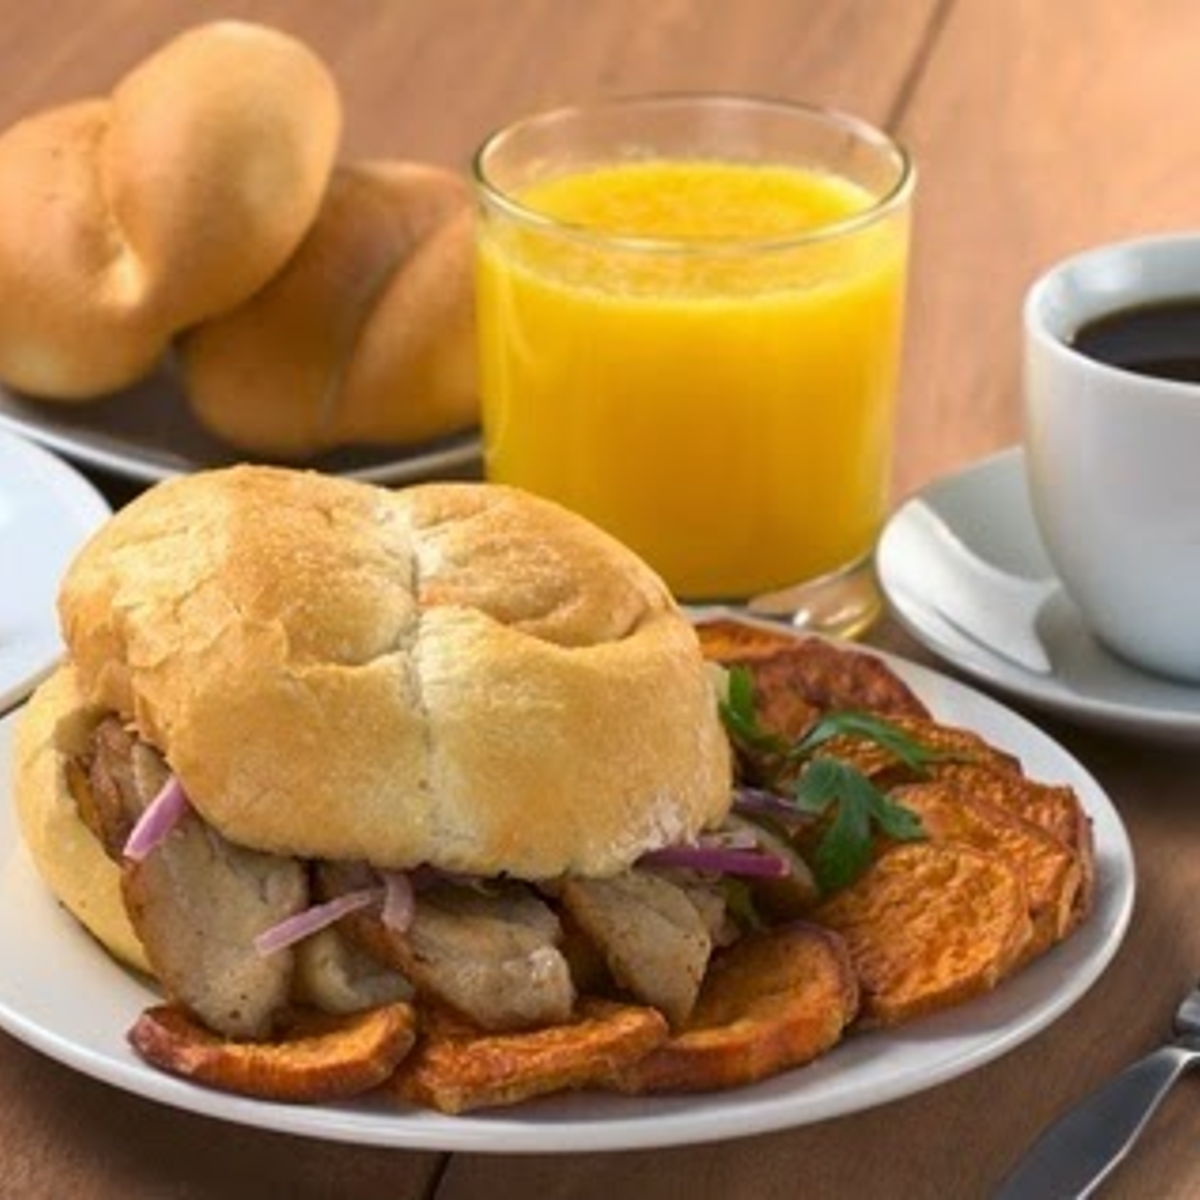 Desayuno Criollo - Traditional Peruvian Breakfast